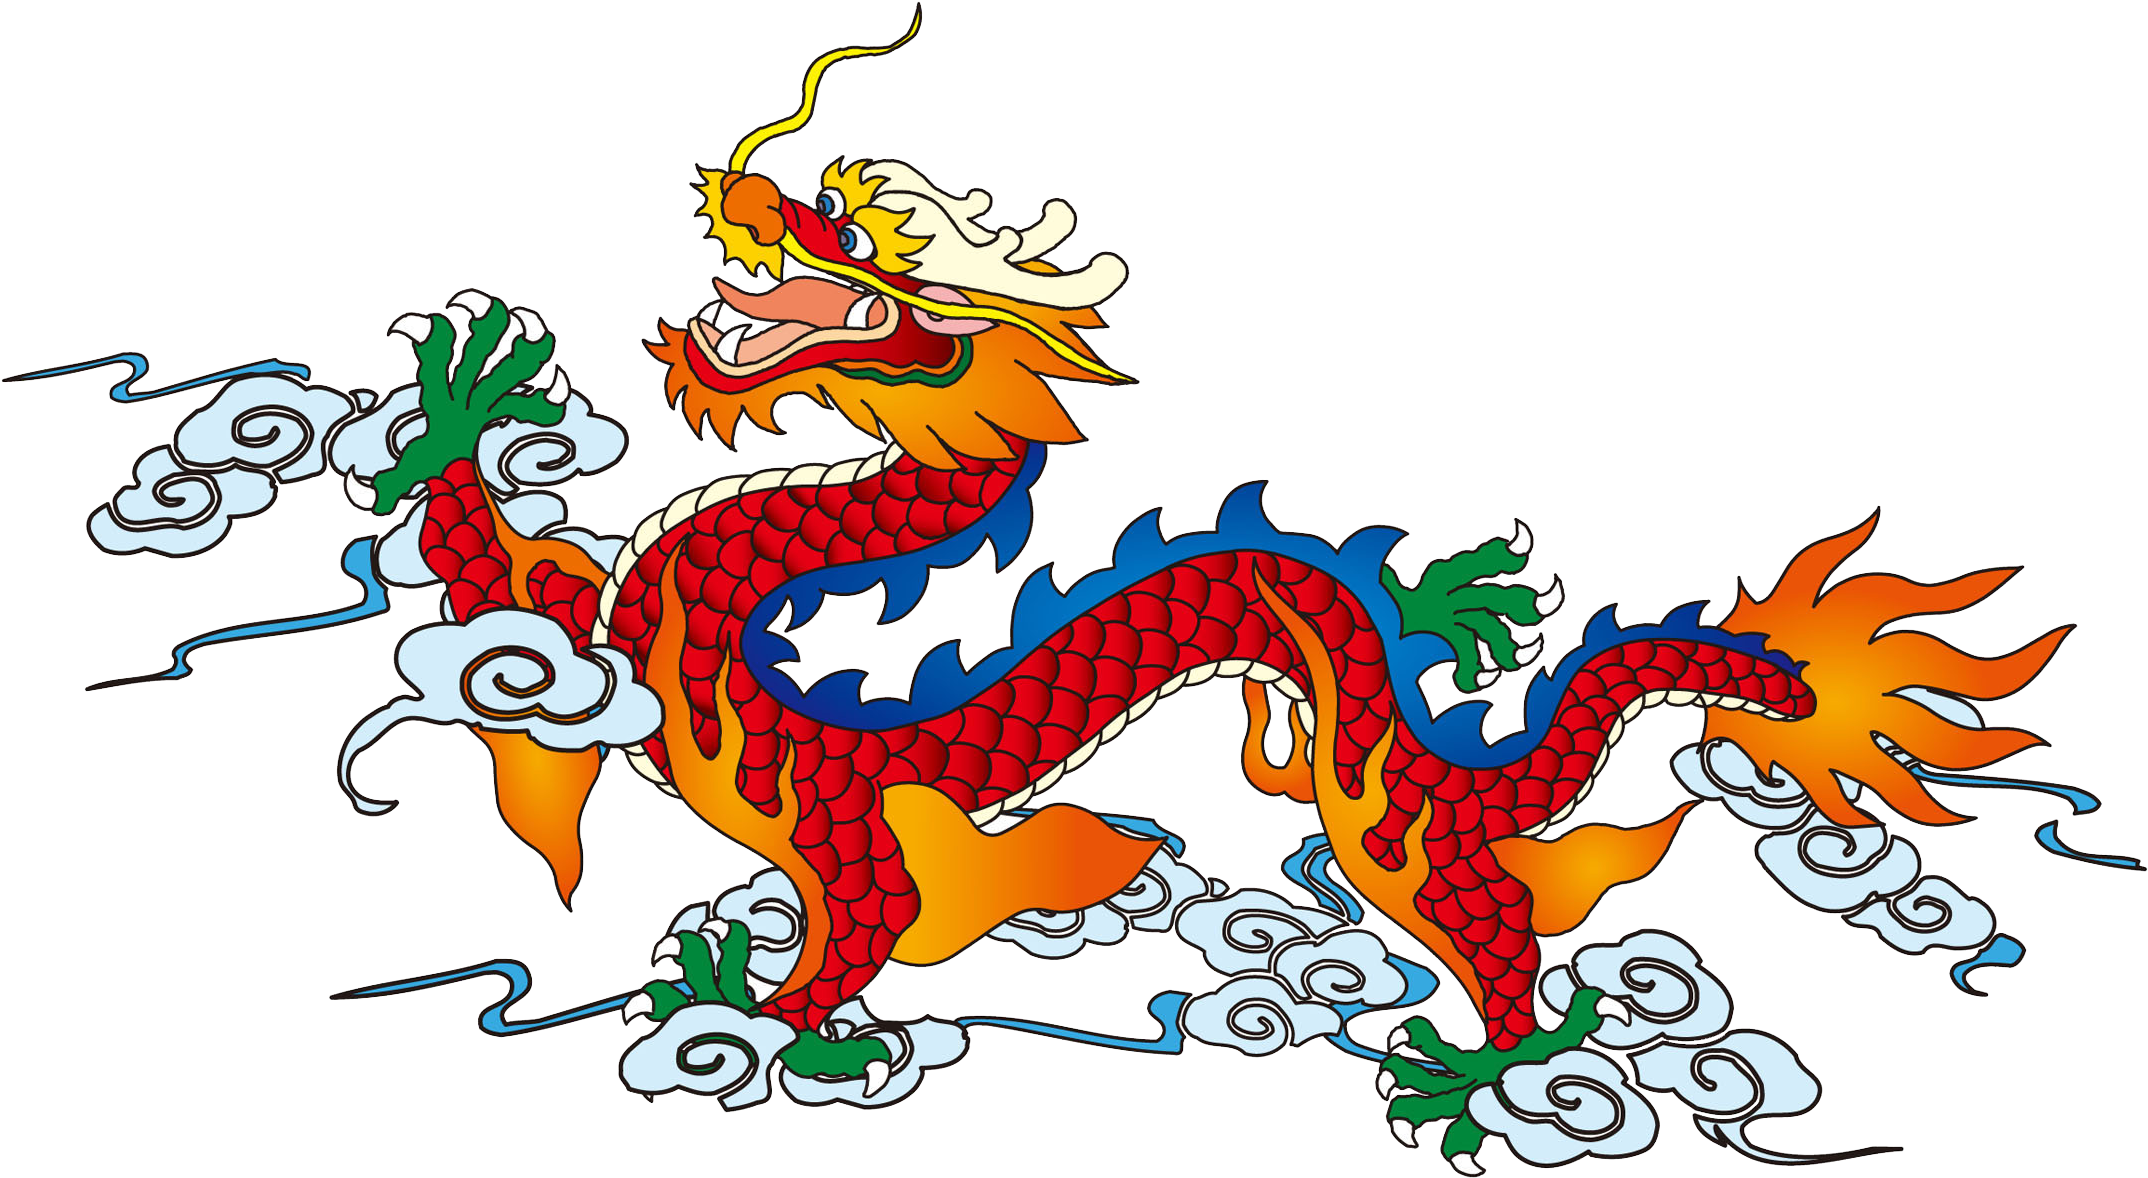 Дракон рисунок для детей новый год. Чжулун дракон. Чжунлун китайский дракон. Китайский дракон вид сбоку. Китайский дракон для детей.